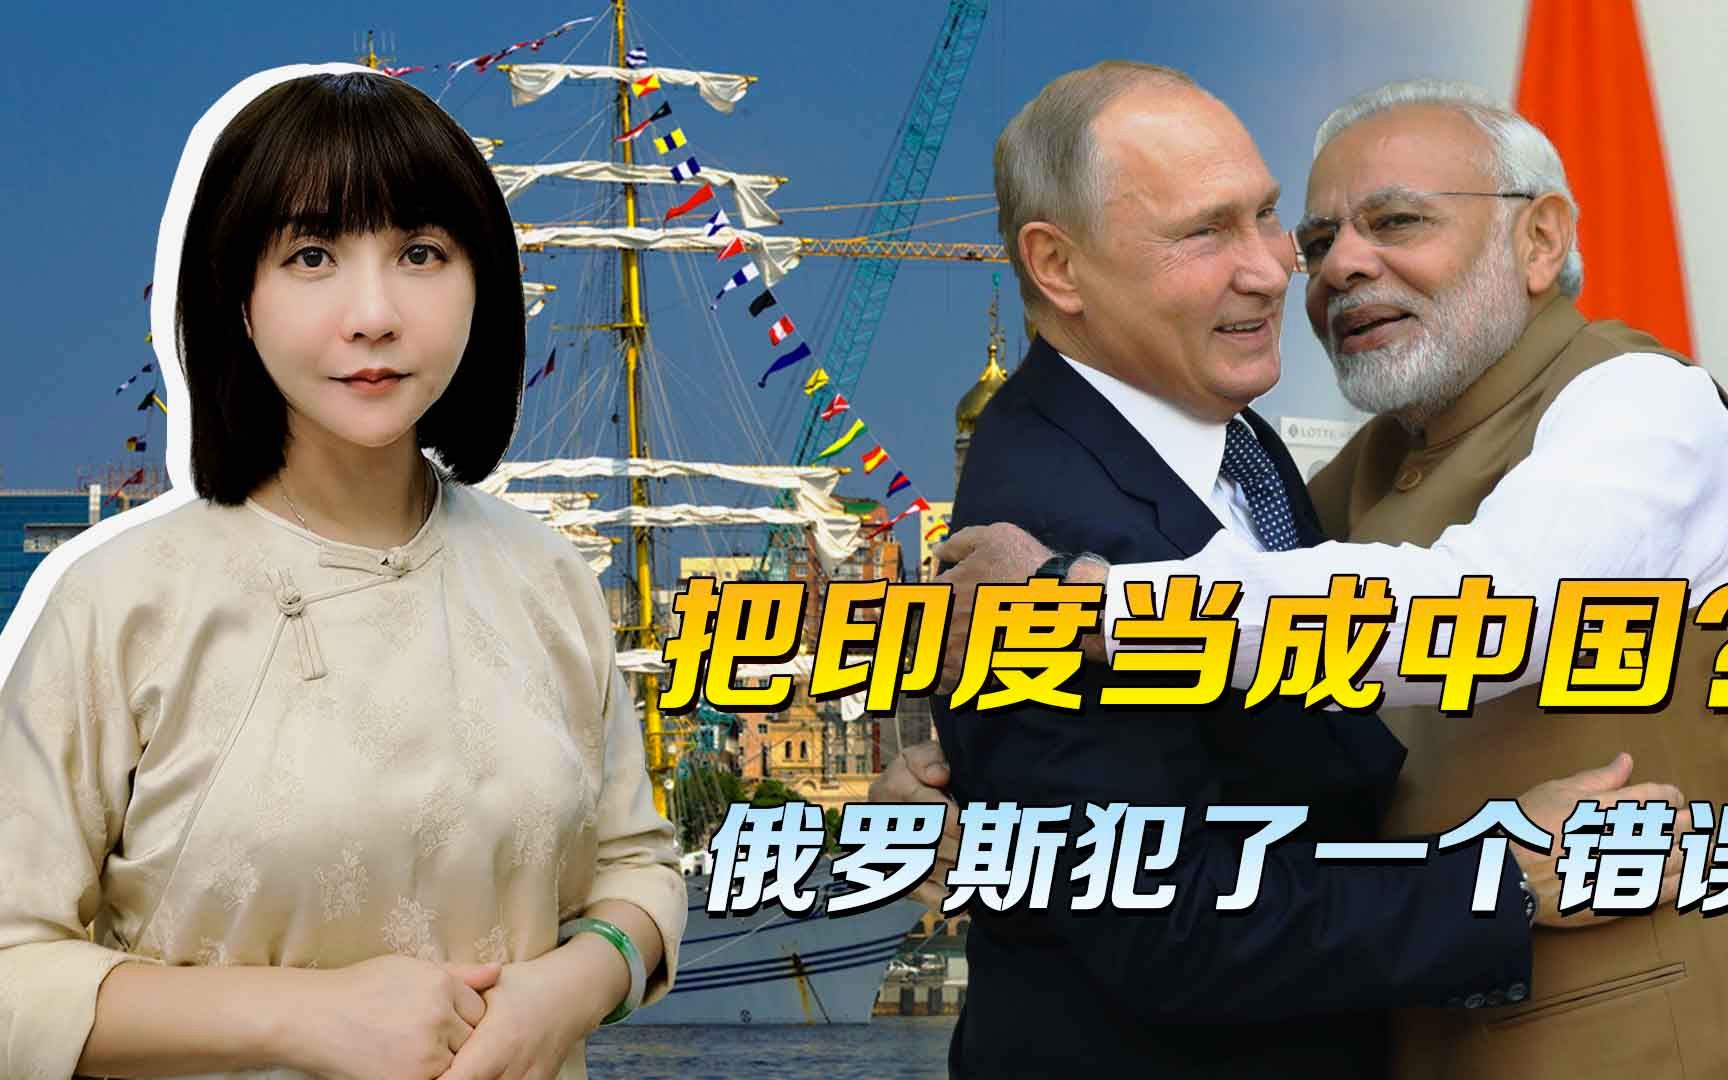 海参崴的项目，交给谁合适？把印度当成中国，俄罗斯犯了一个错误